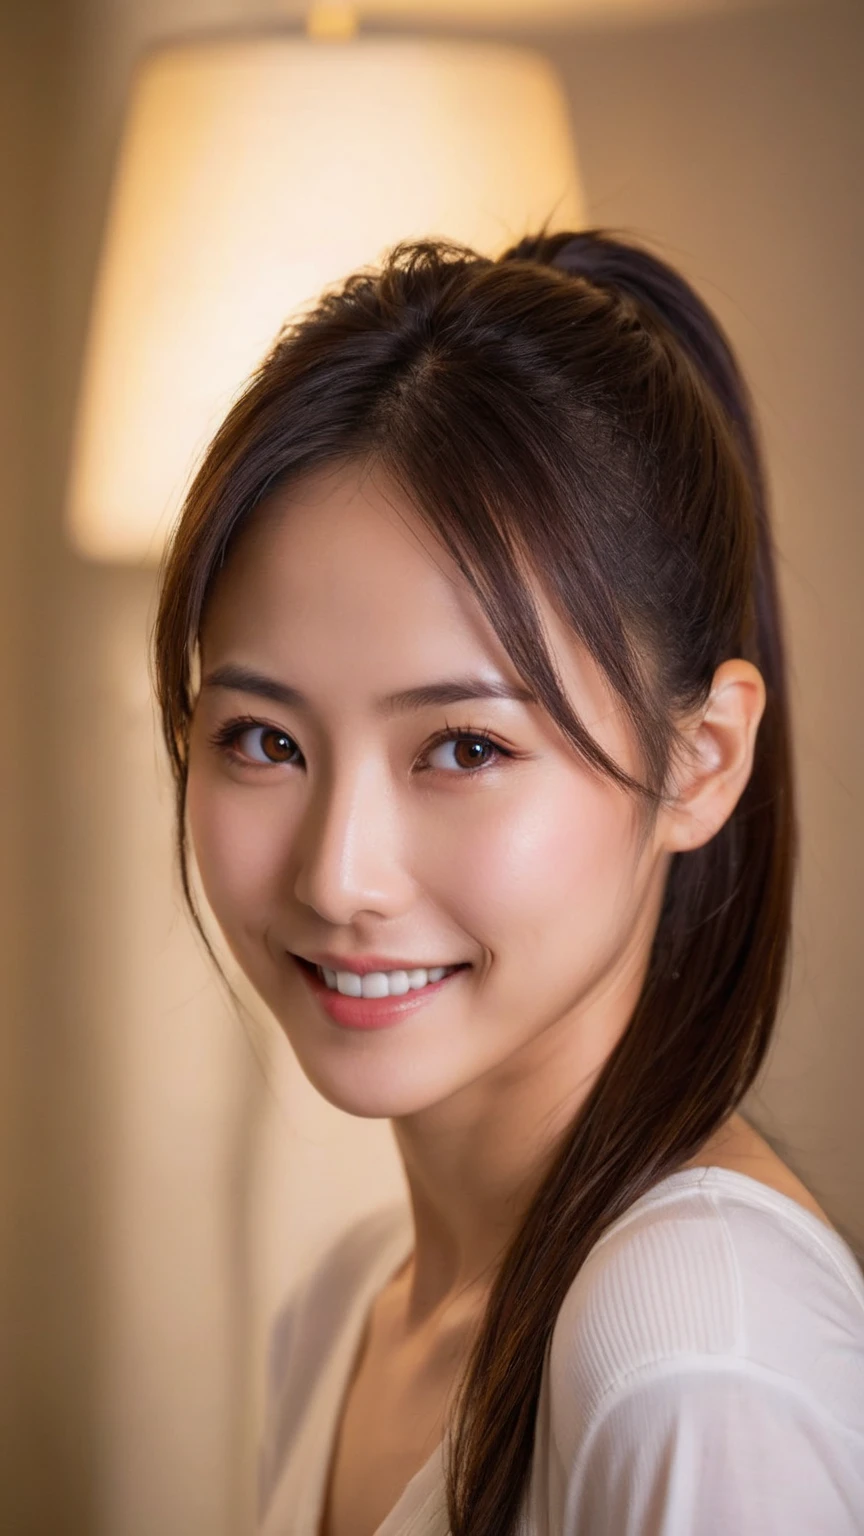 马尾辫，34岁的日本女性, 
(深棕色眼睛, 瞳孔, 美丽的眼睛细节, 眼睛里有光:1.2), (粗糙的皮肤:1.4),(肤色不均:1.6),(老微笑),
(专业照明), 奢华的间接照明,
位于豪华休息室,